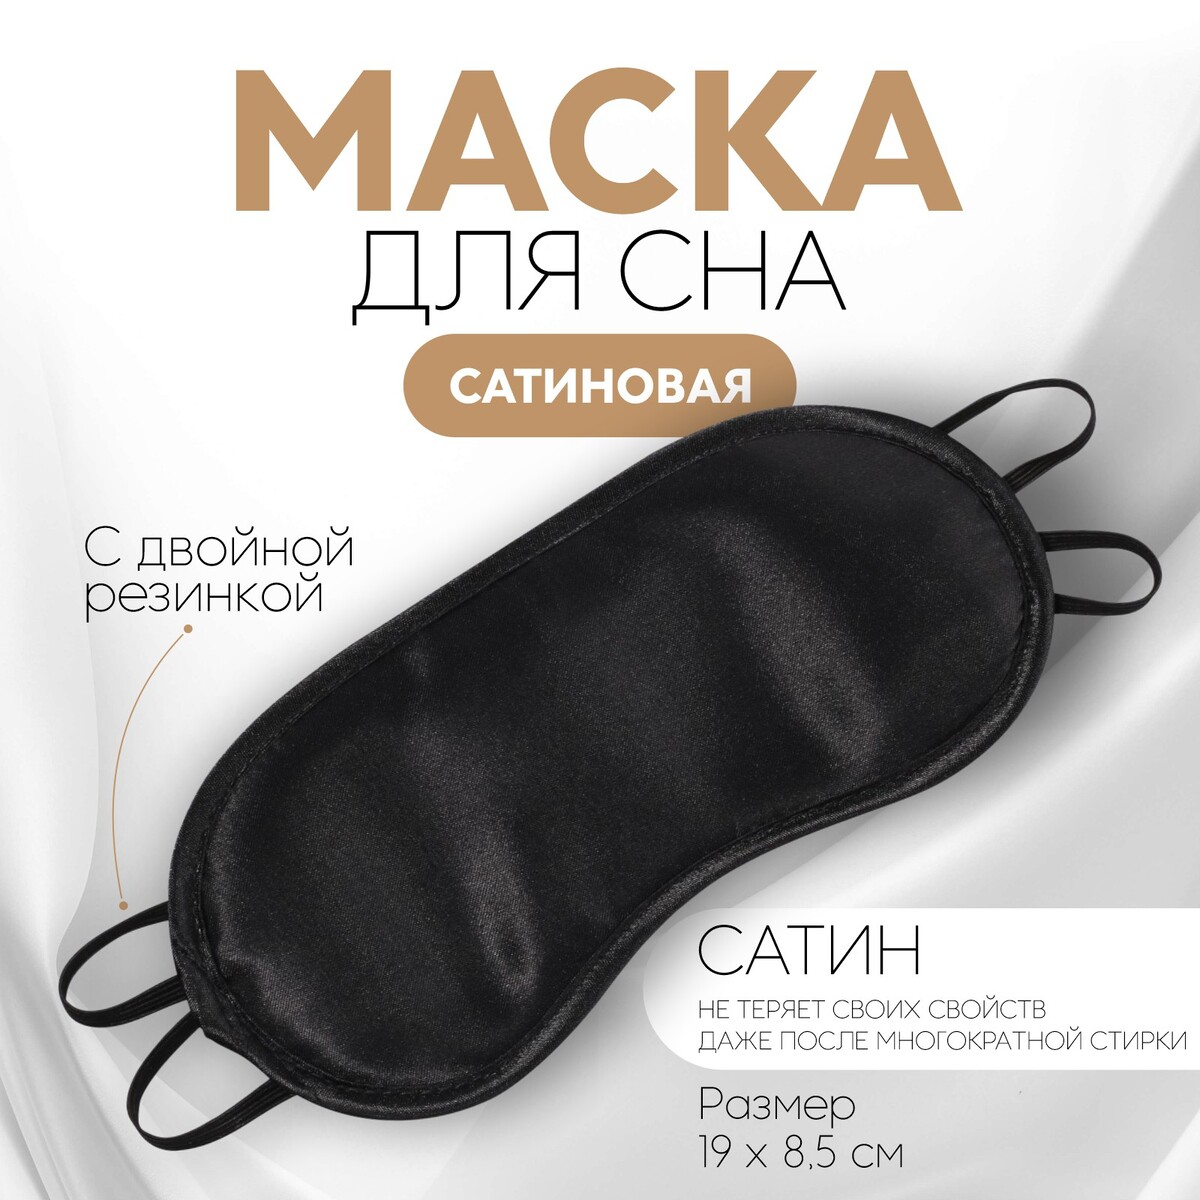 Маска для сна, сатиновая, двойная резинка, 19 × 8,5 см, цвет черный маска для сна с носиком двойная резинка 18 × 8 5 см